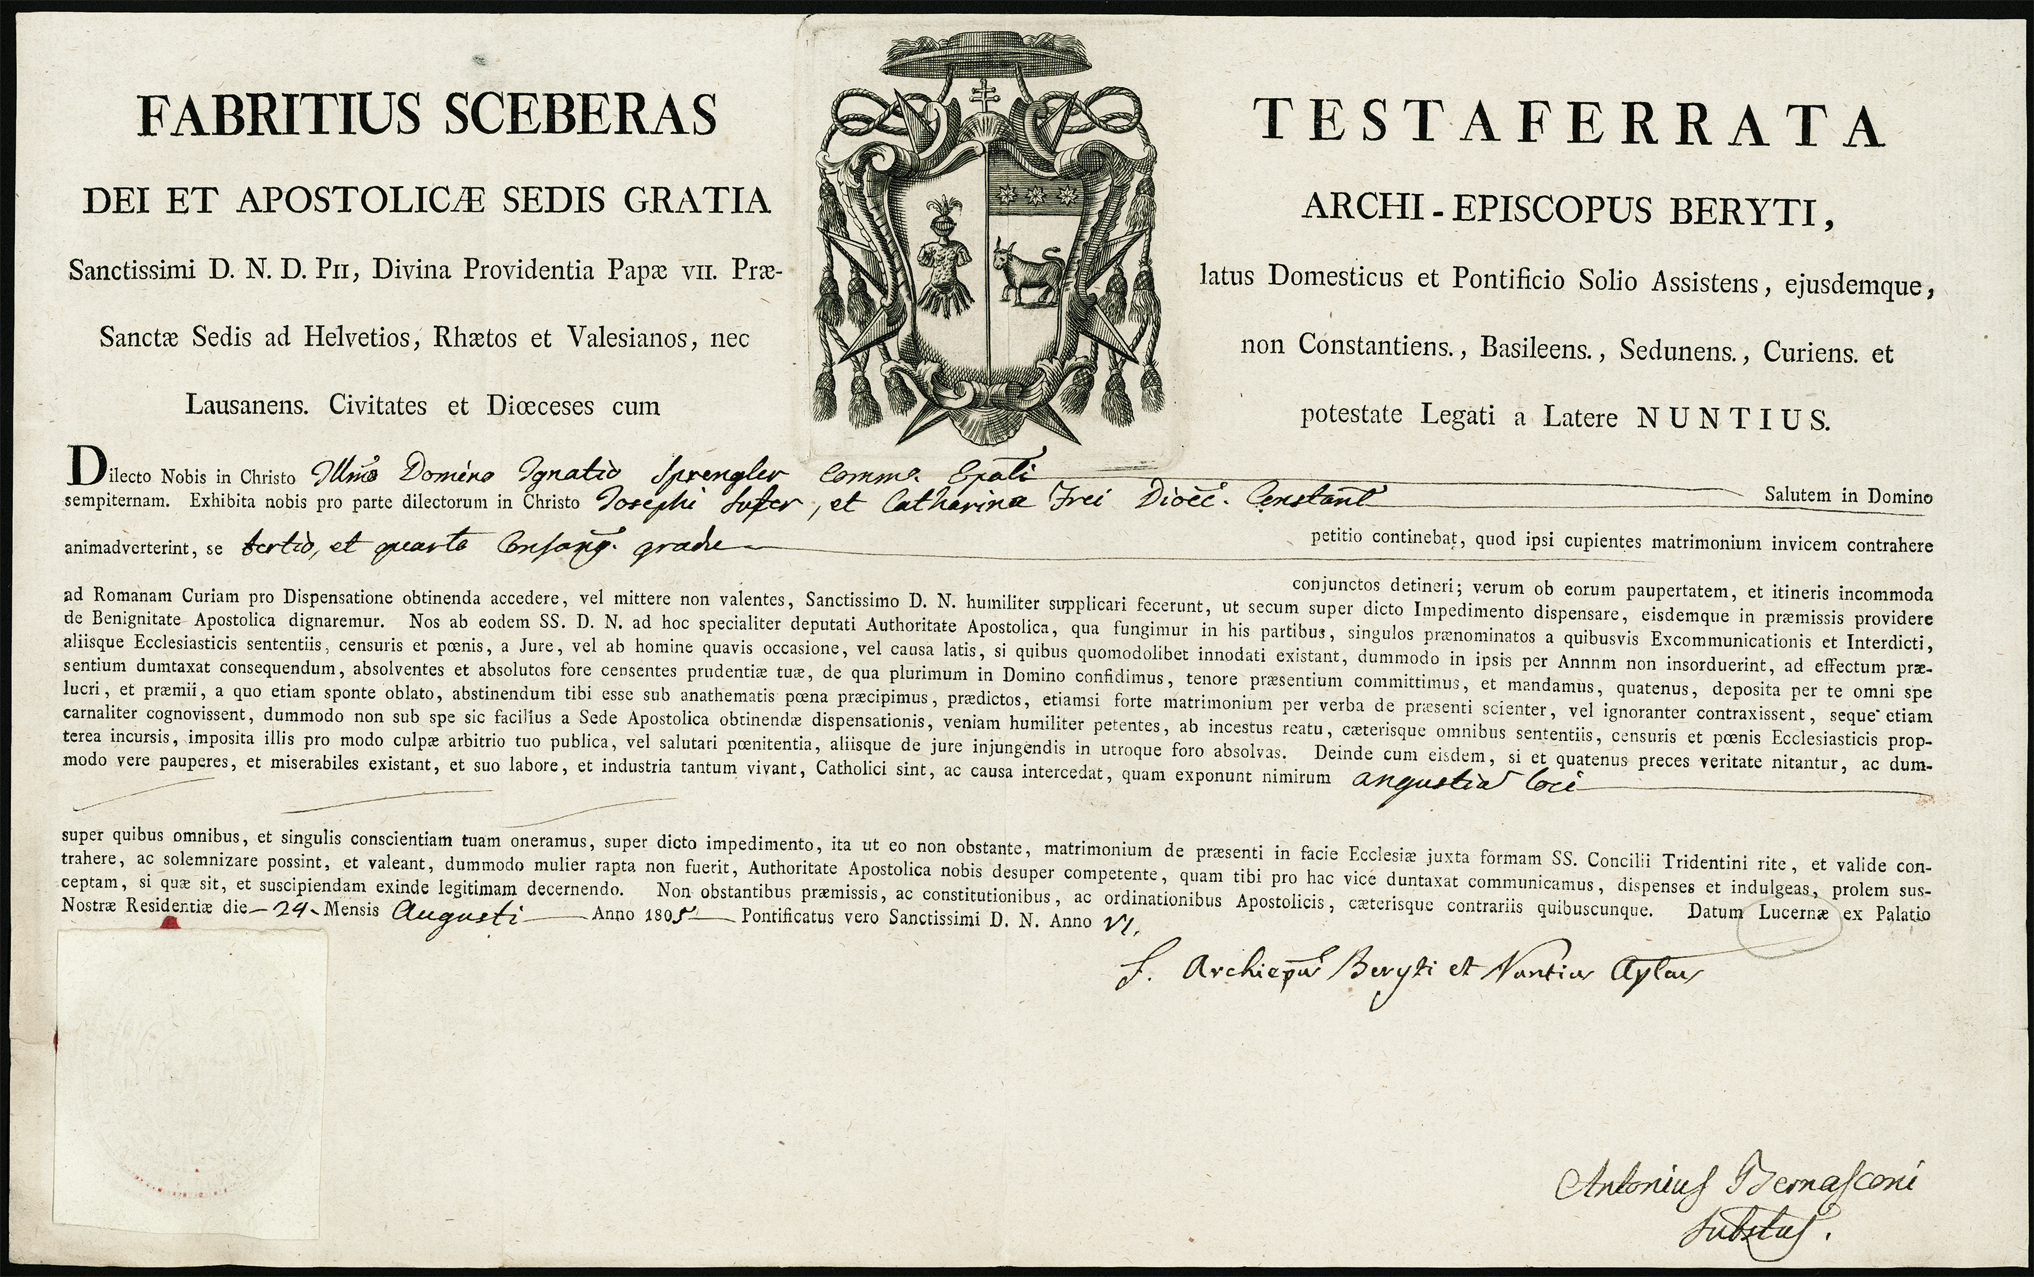 Referenz: testaferrata-fabritius-sceberas-papstlicher-nuntius-in-der-schweiz-1803-1816